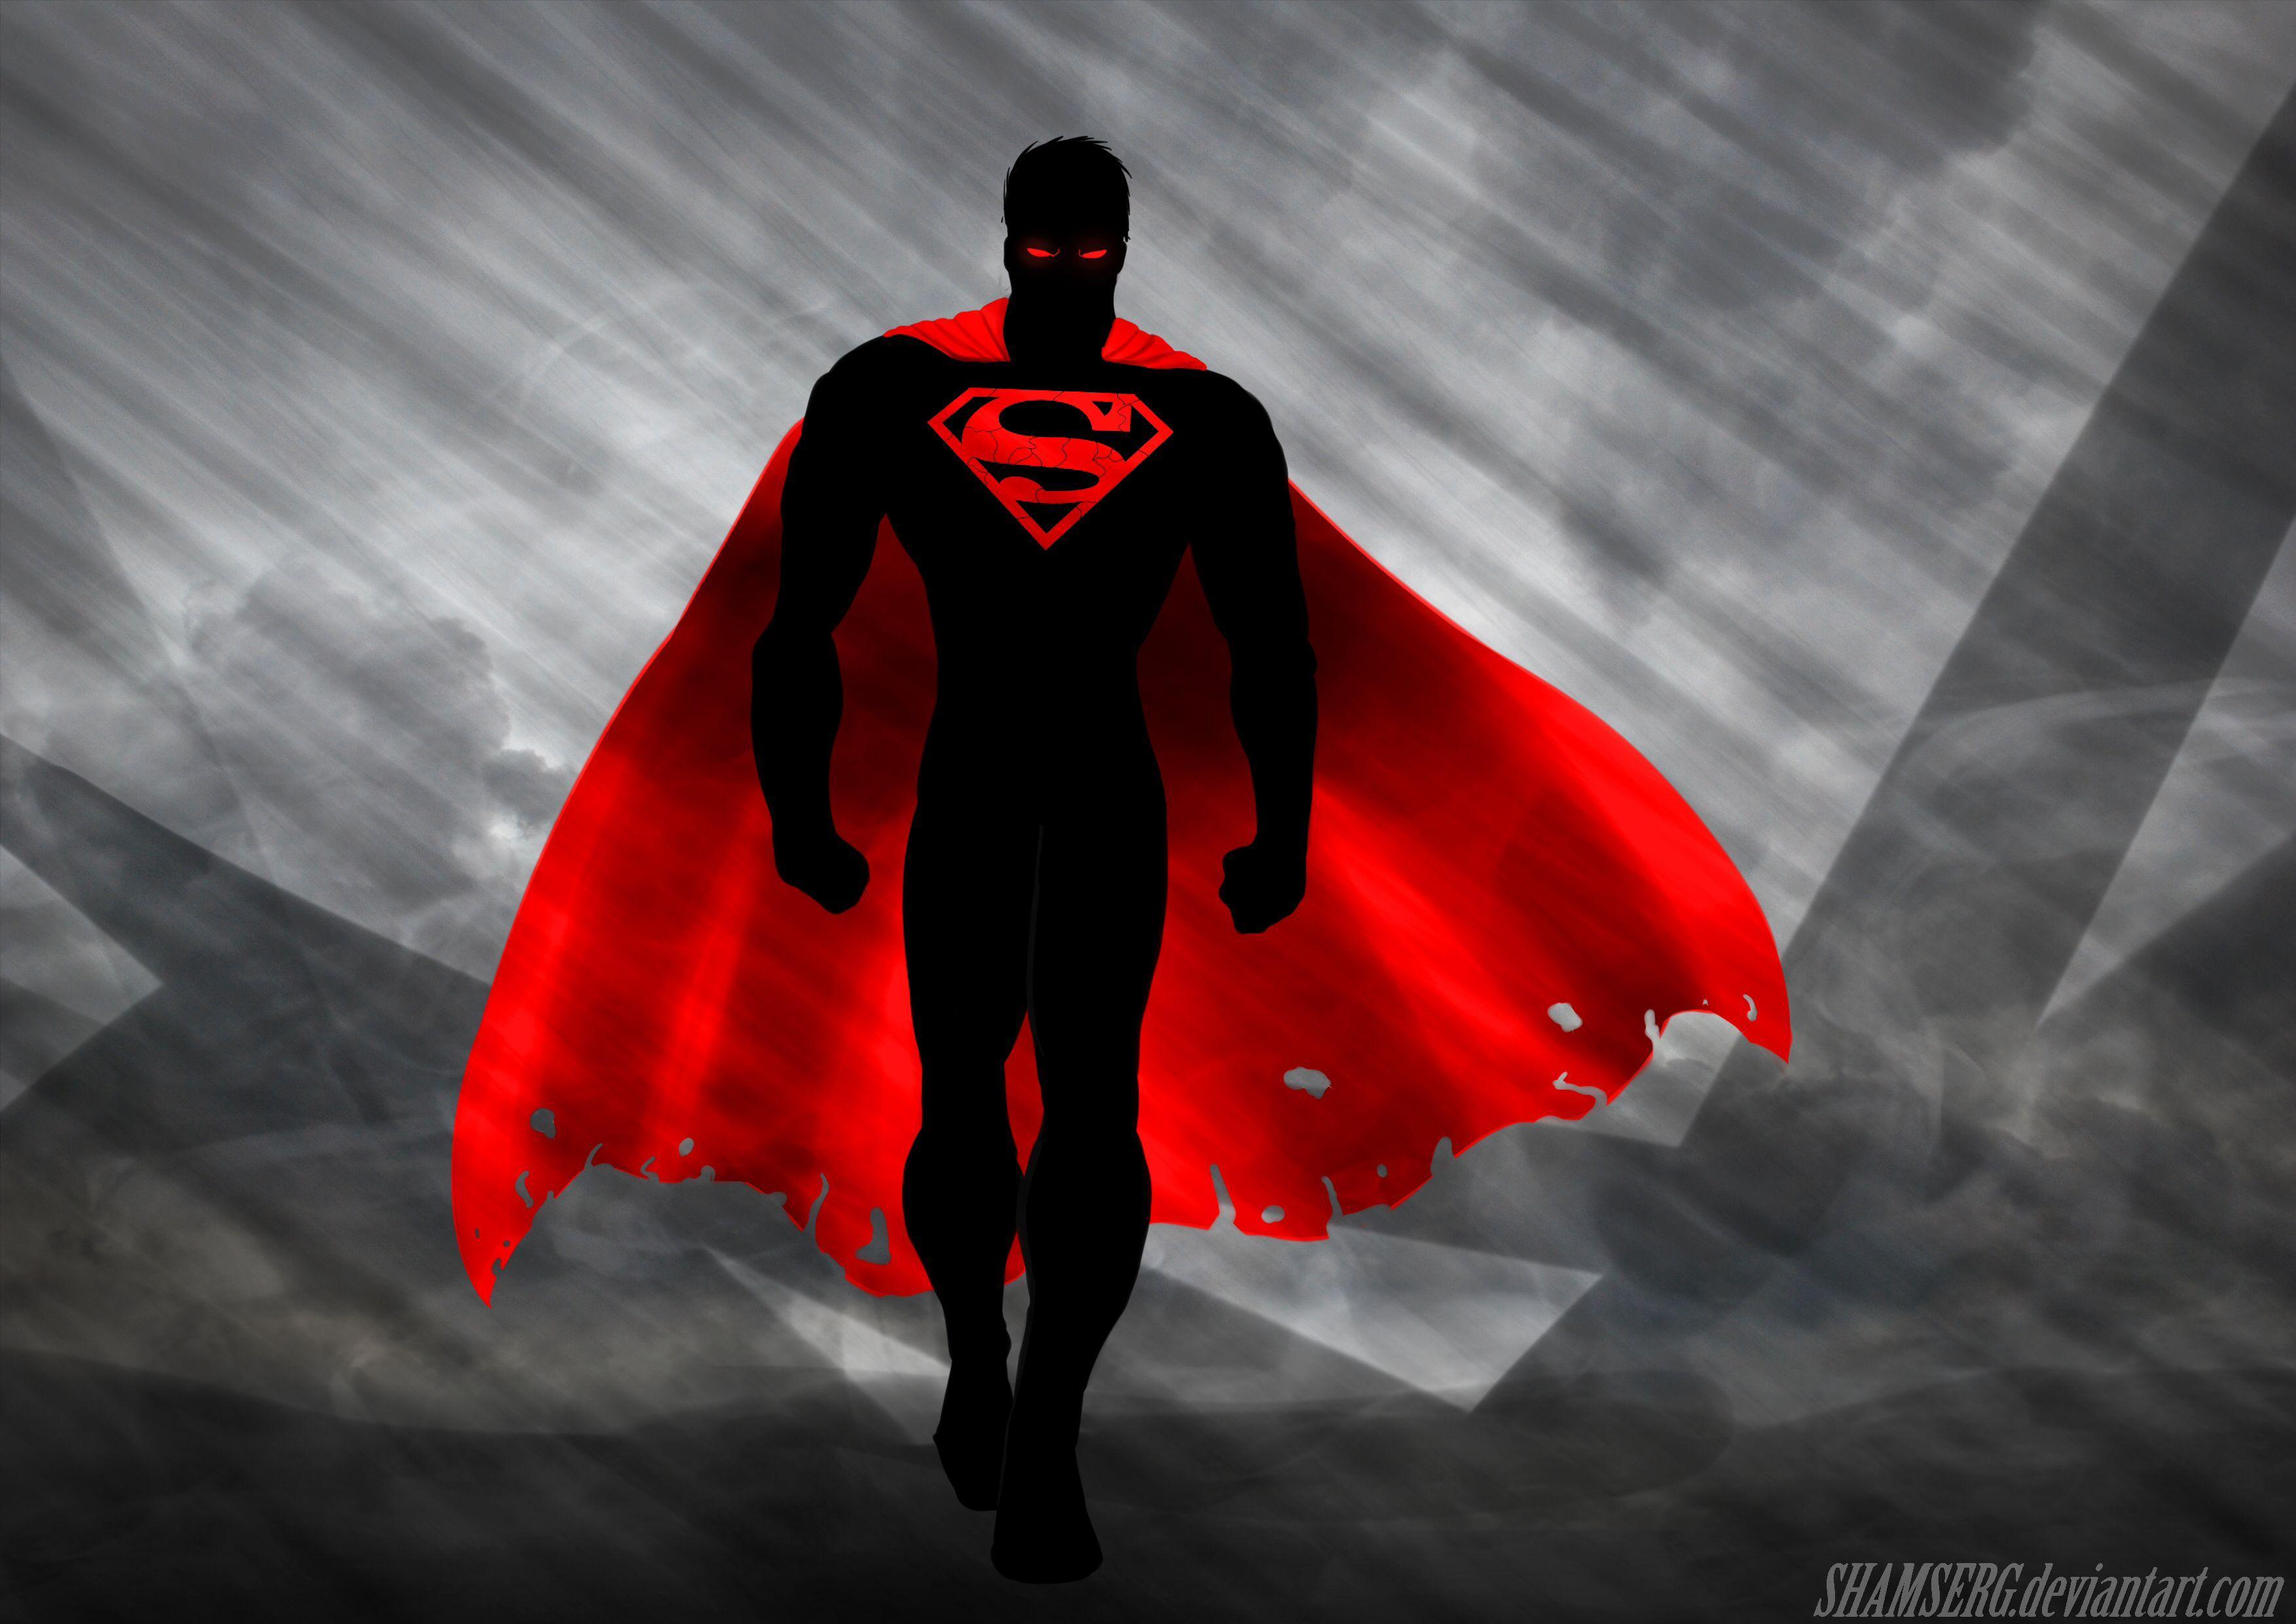 Is super heroes